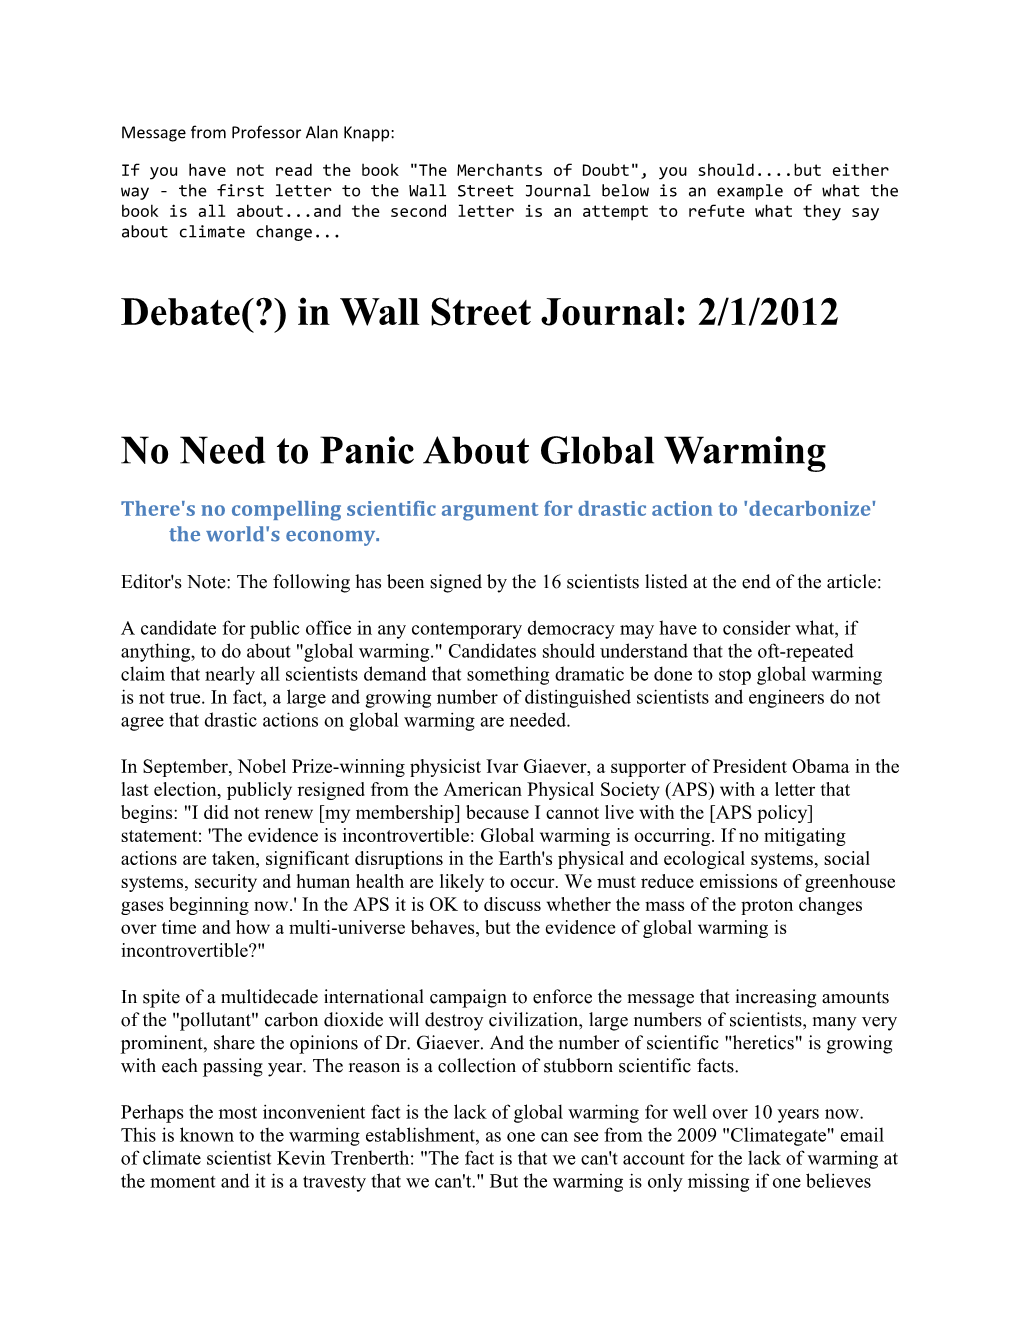 Debate(?) in Wall Street Journal: 2/1/2012